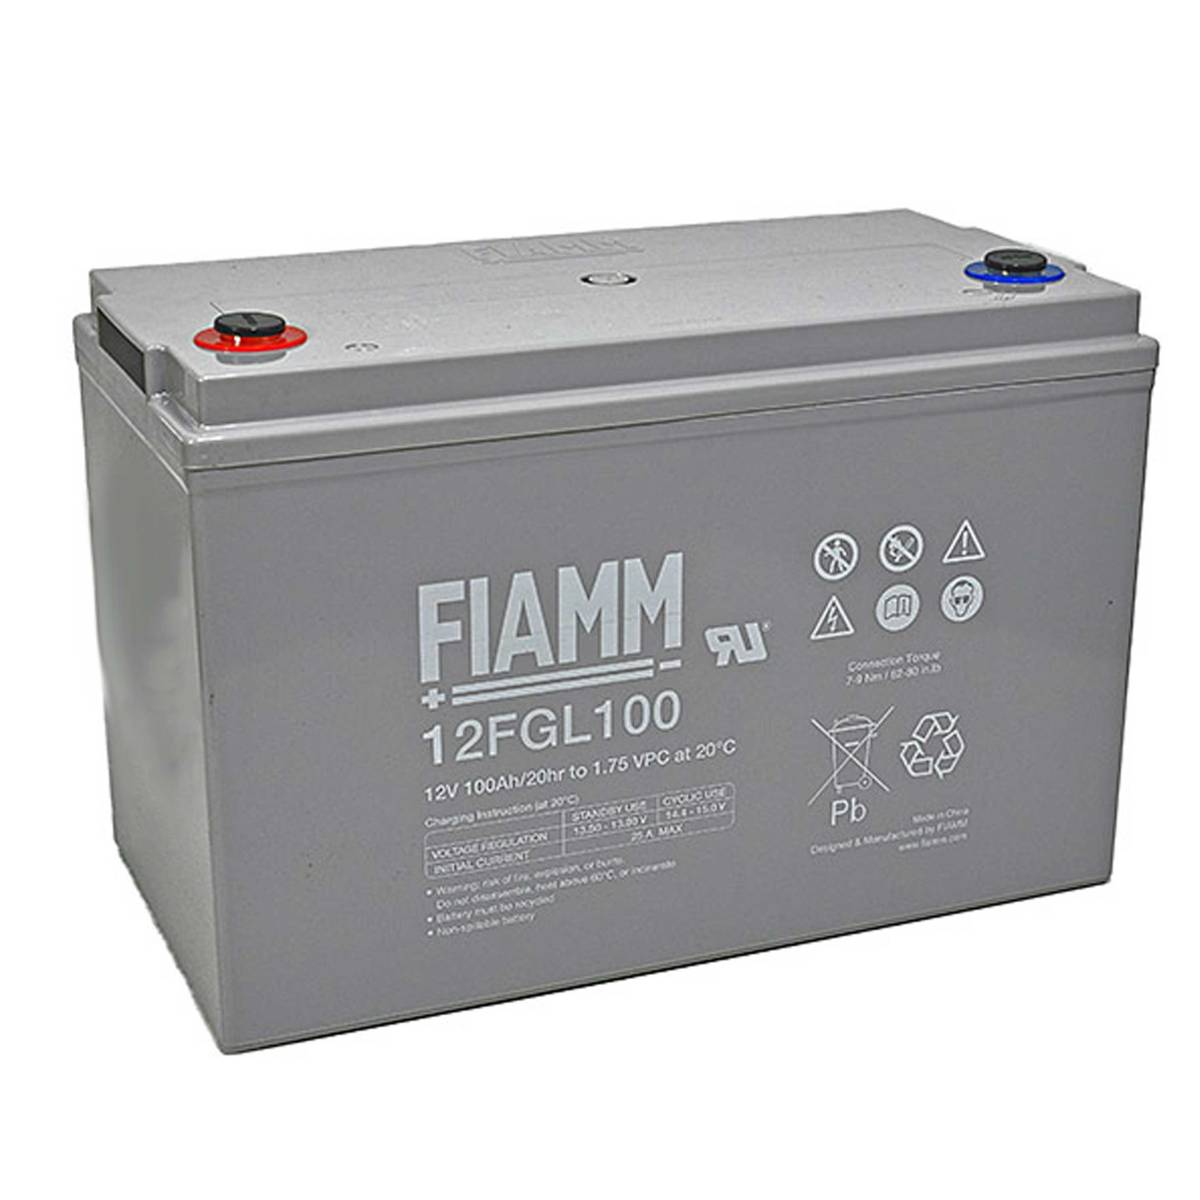 Batterie AGM 100Ah 12V EFFEKTA BTL 12-100